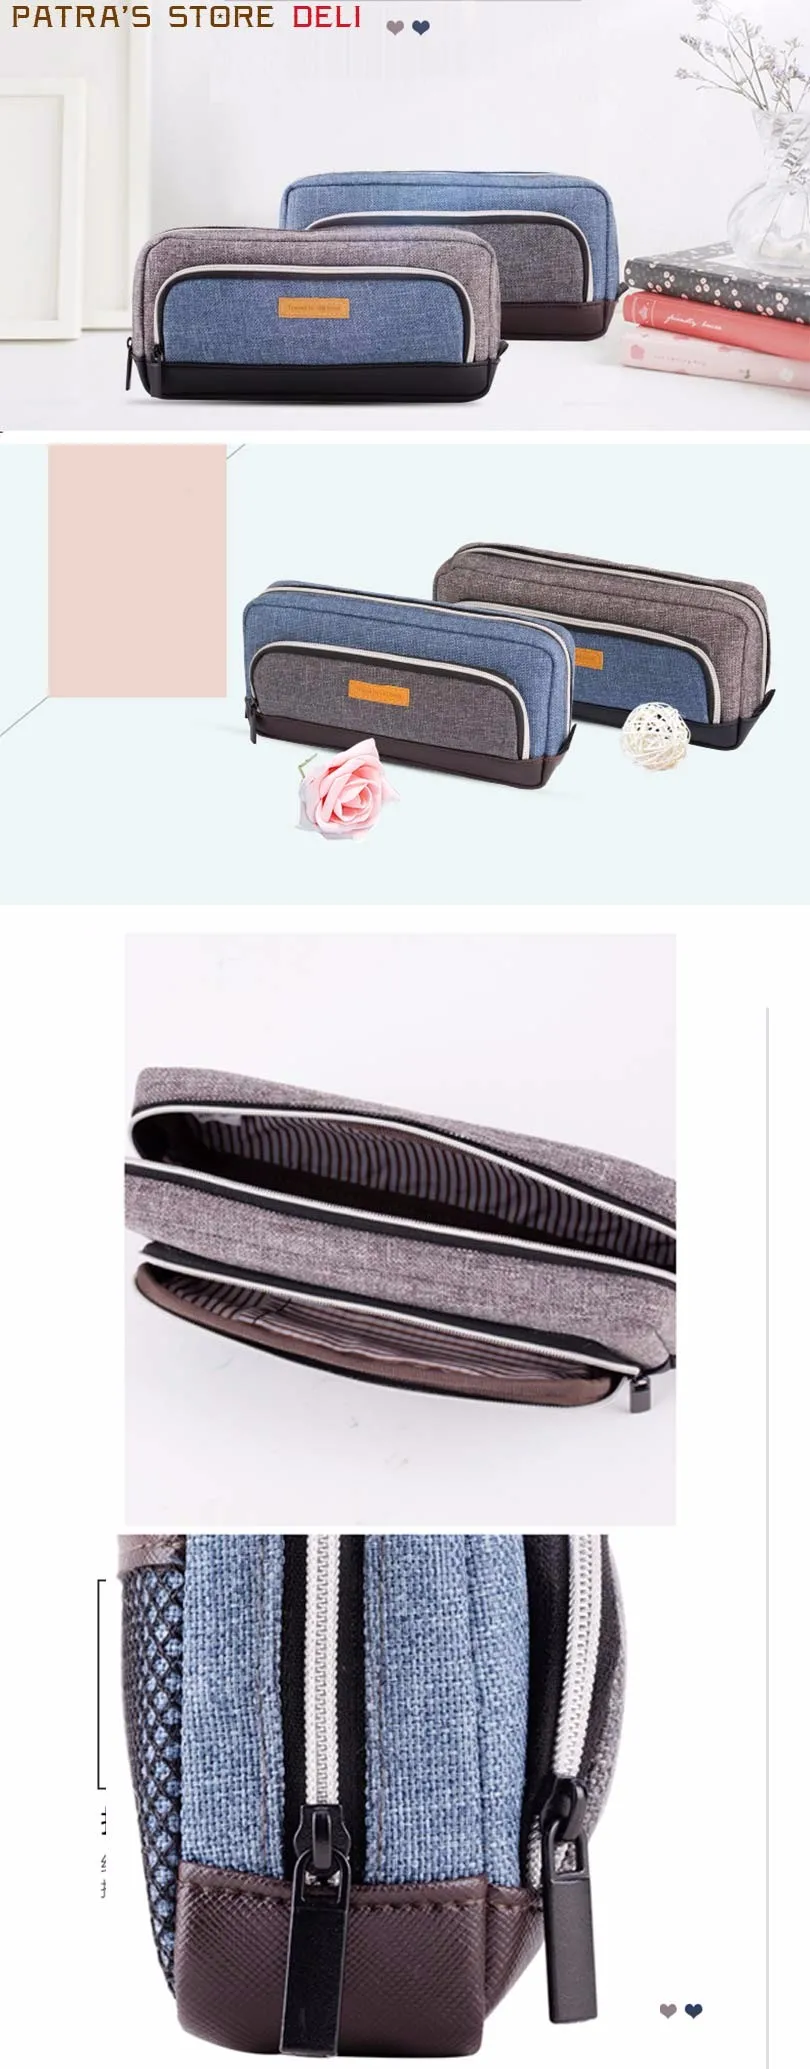 Балык карандаш для ткани пенал коробка винтажные джинсовый пенал школьные канцелярские принадлежности три большой карман на молнии пенал